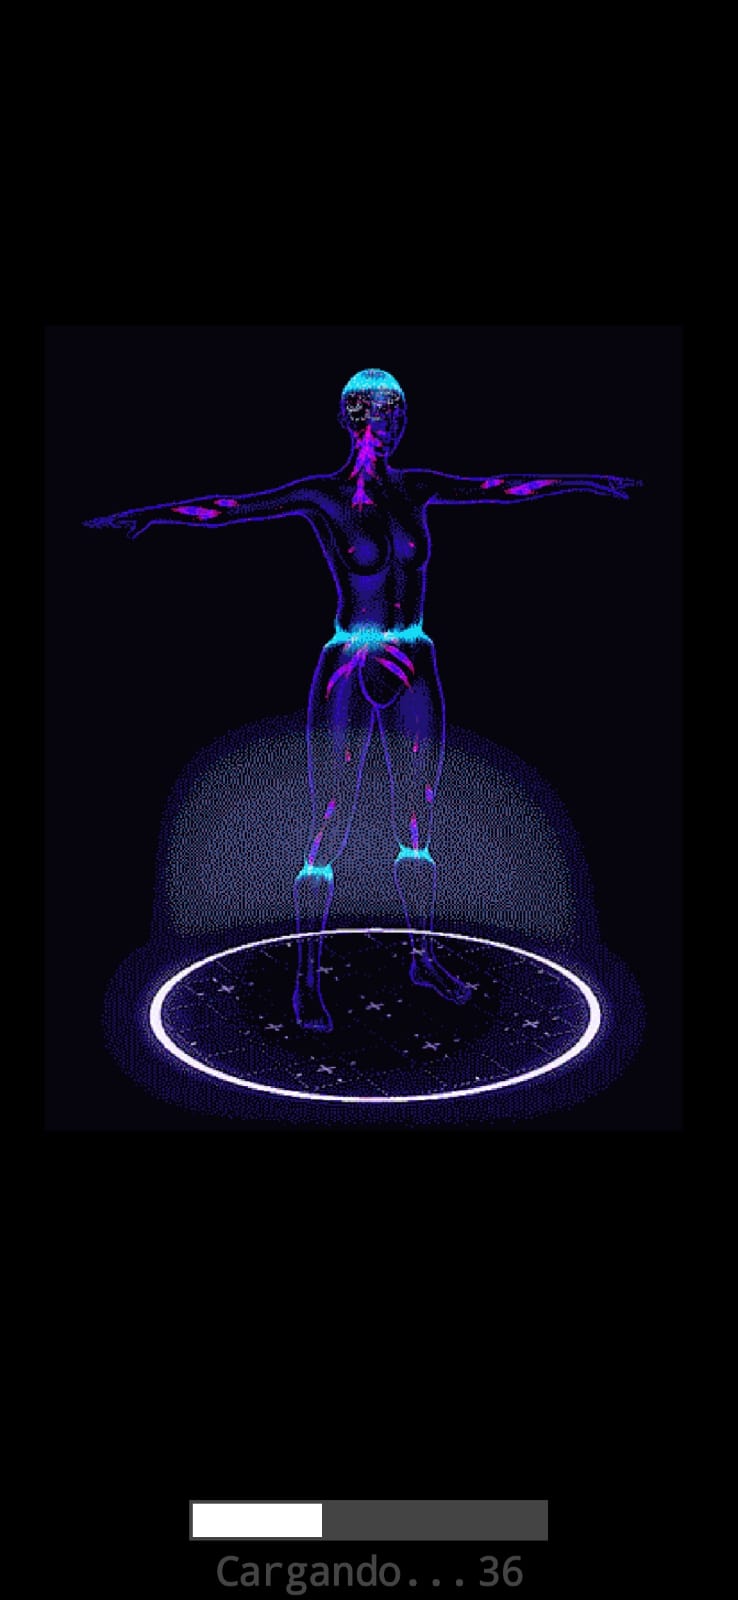 Pantalla con un cuerpo humano de color azul, se observan ondas que simulan el escaneo corporal.